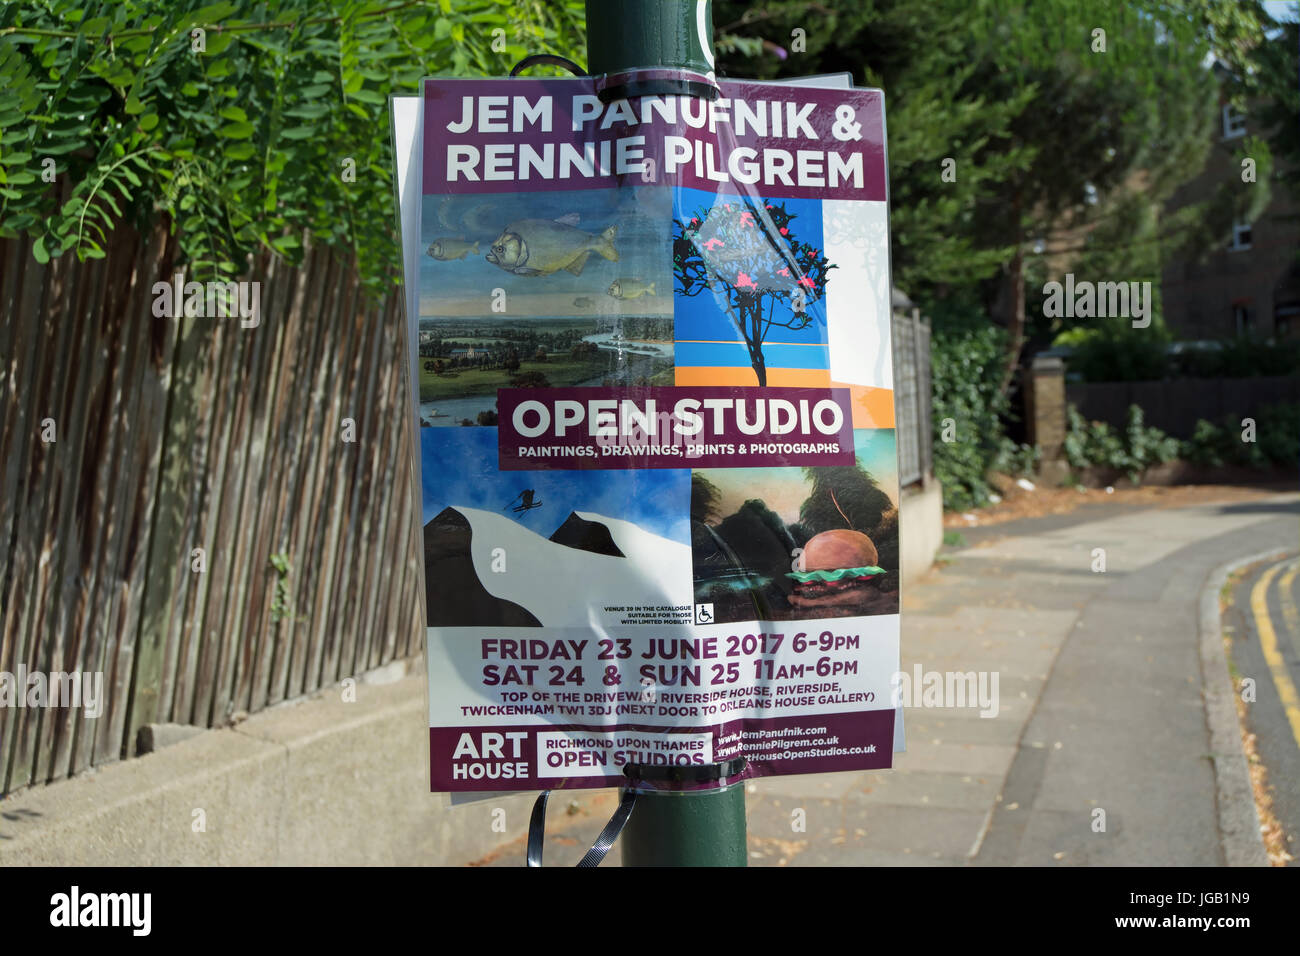 Bando pubblicità Richmond upon Thames consiglio 2017 Art house open studio event e studio aperto di artisti jem panufnik e Rennie Pilgrem Foto Stock